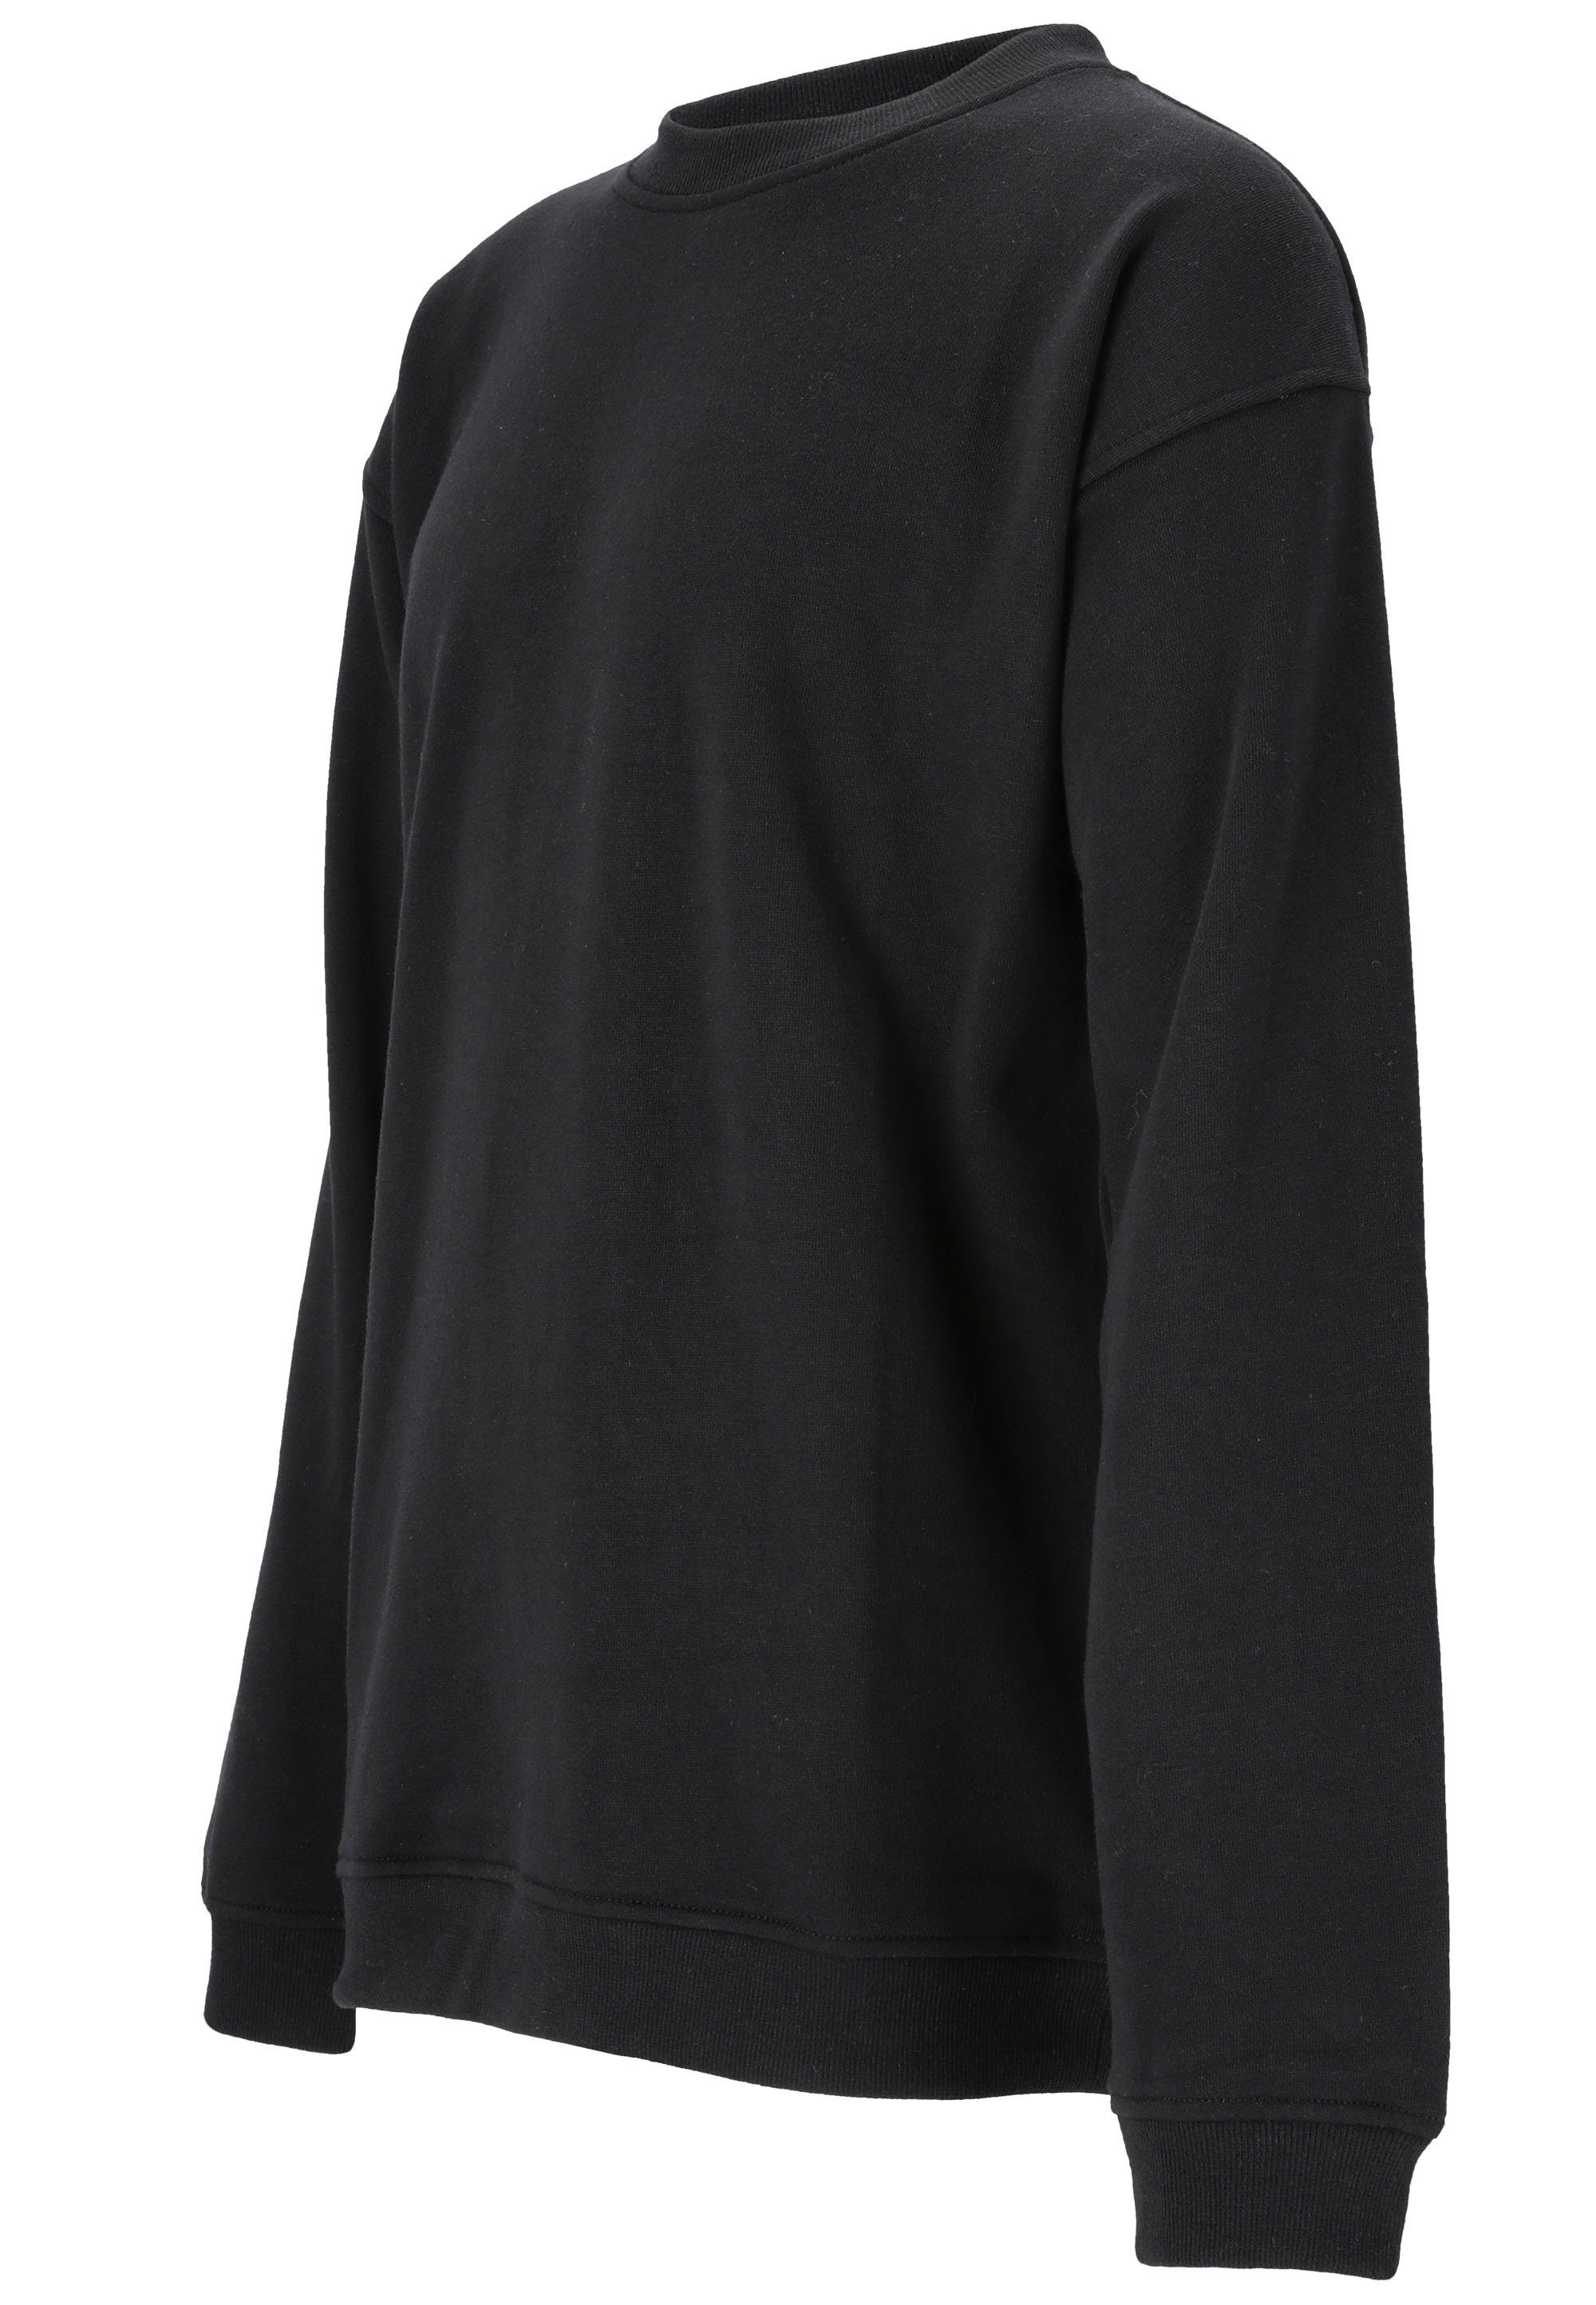 ENDURANCE Sweatshirt schwarz Baumwoll-Touch mit Bastini